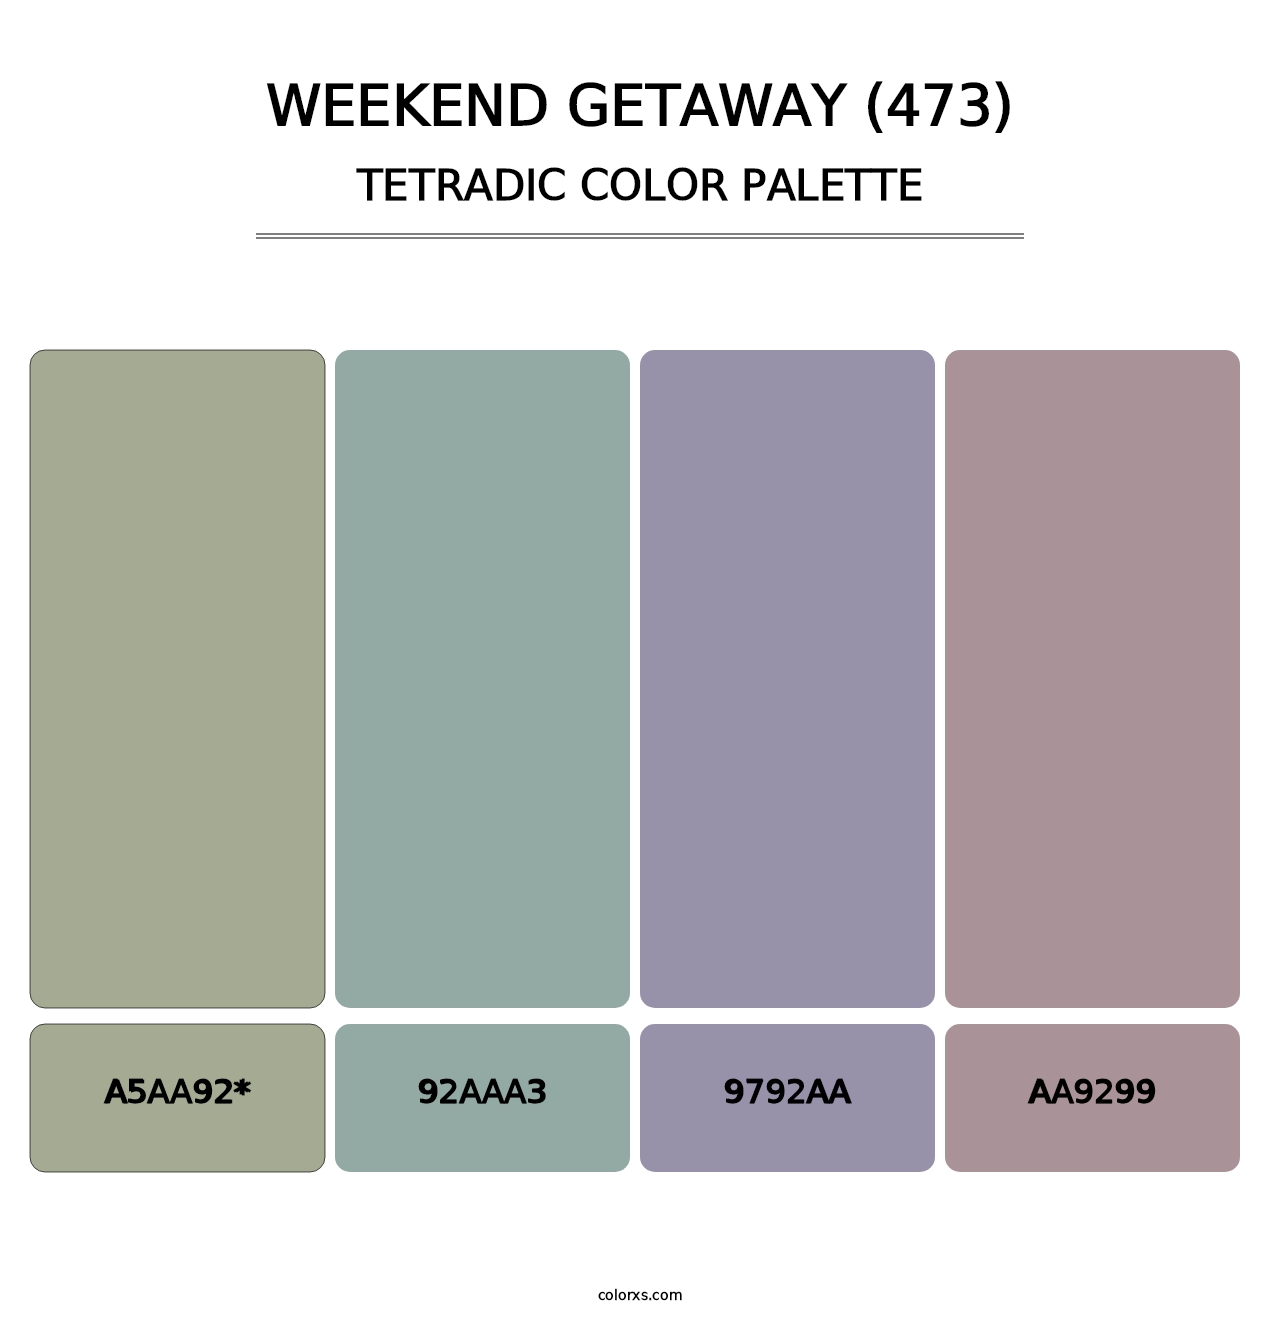 Weekend Getaway (473) - Tetradic Color Palette